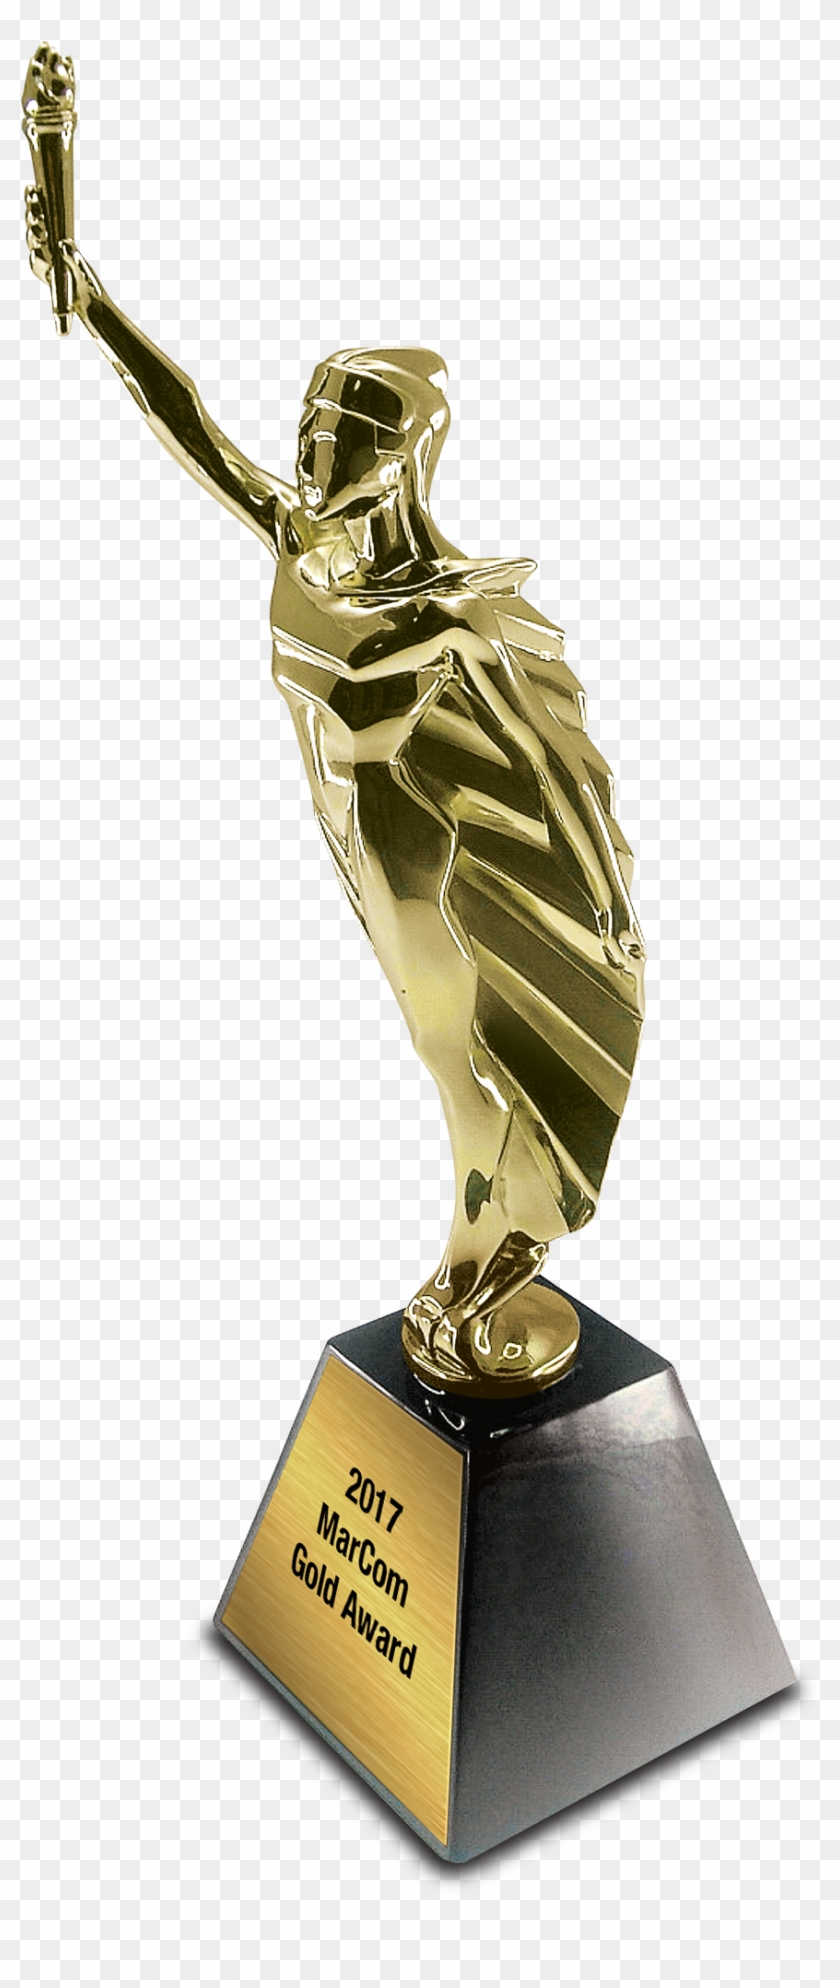 Gold Award Statuette Jpeg / Png - Marcom Gold Winner #1113055